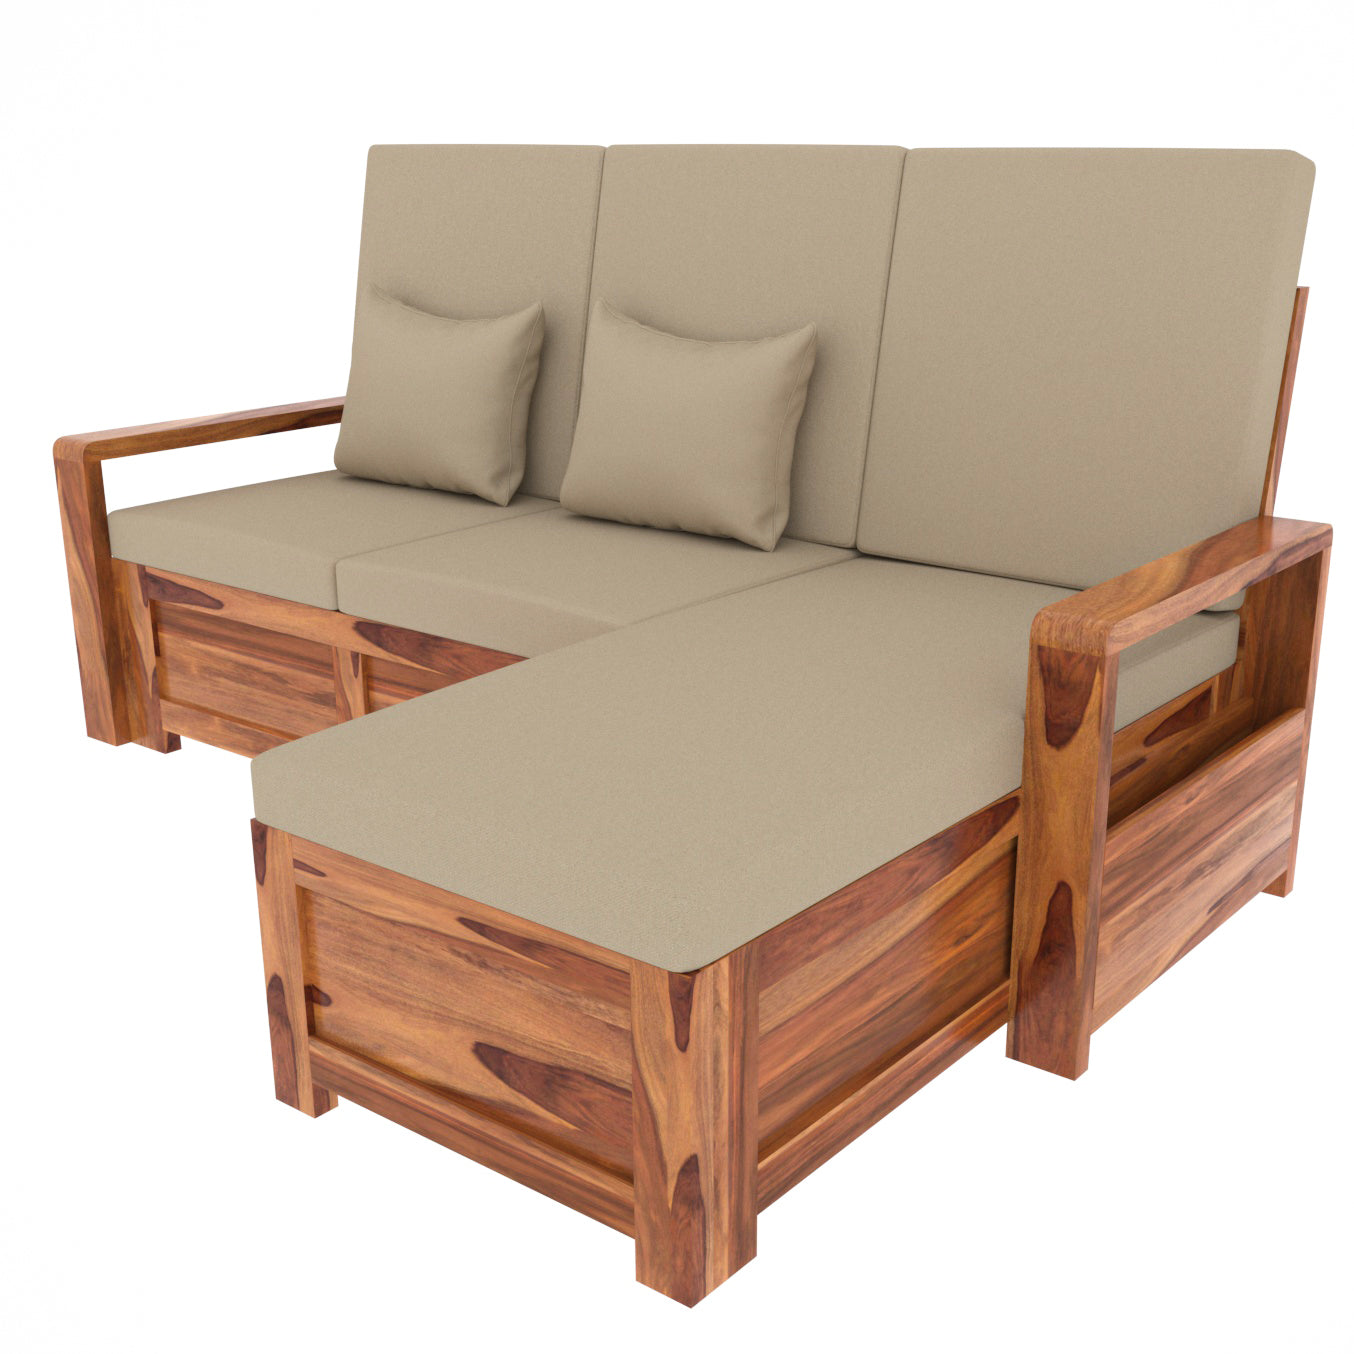 Tan Cream White Wooden Four Seater Sofa with Storage Sofa